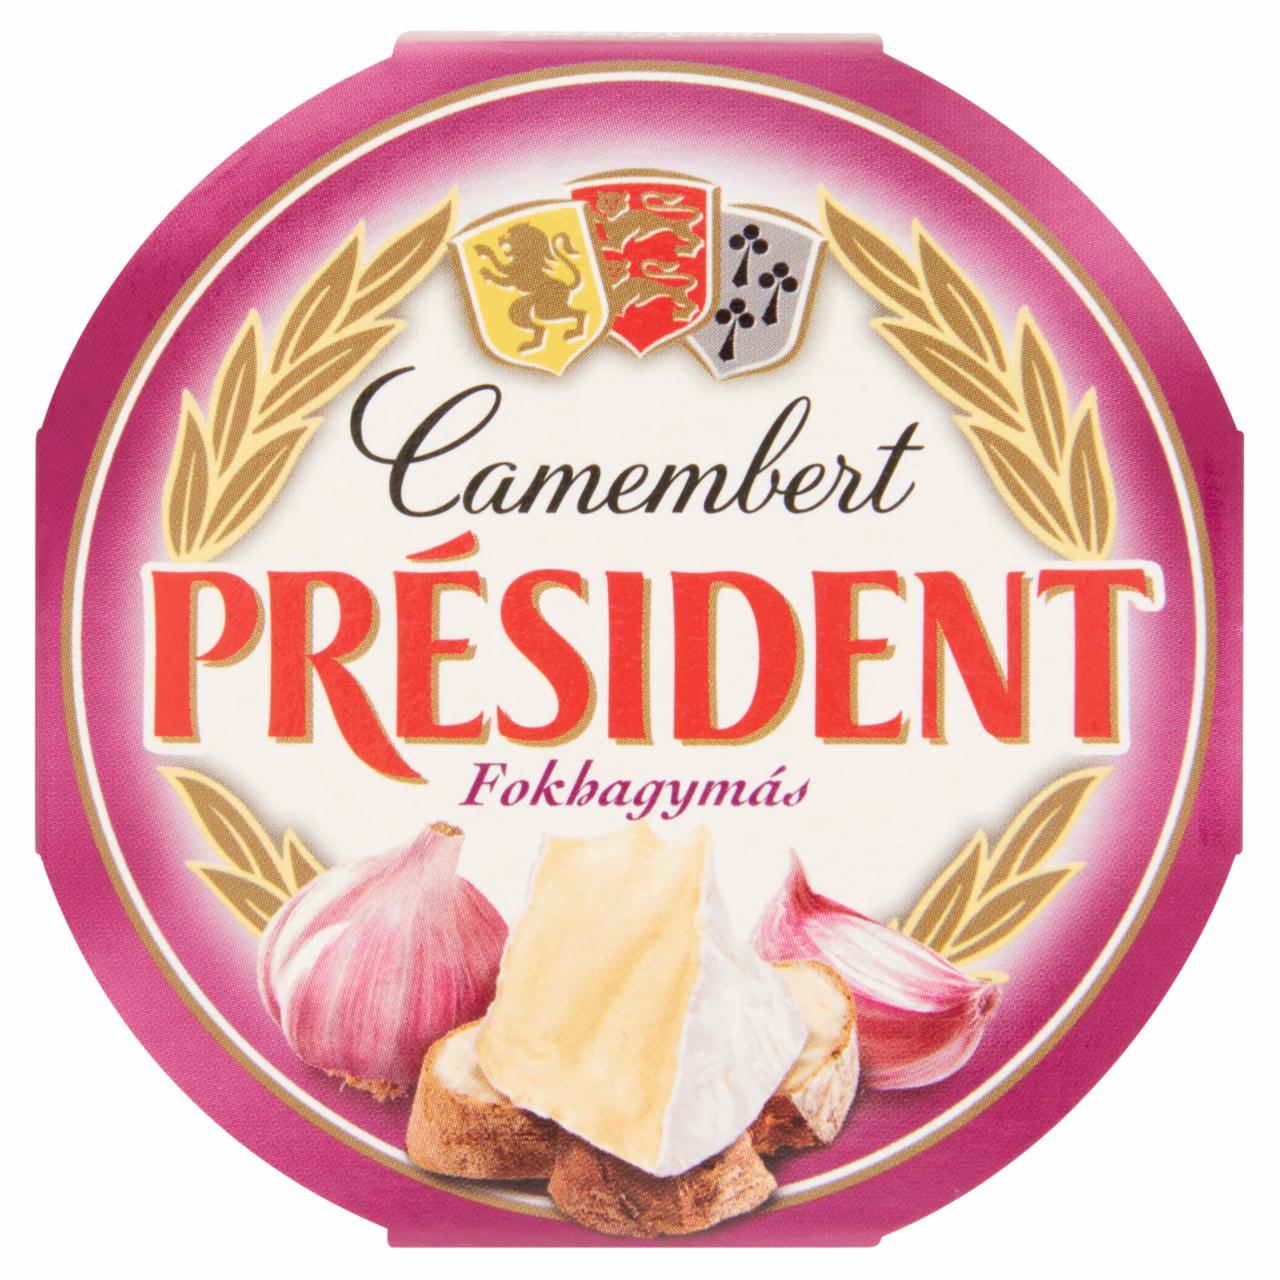 Képek - Président Camembert fokhagymás, fehér nemespenésszel érlelt, zsírdús lágy sajt 120 g